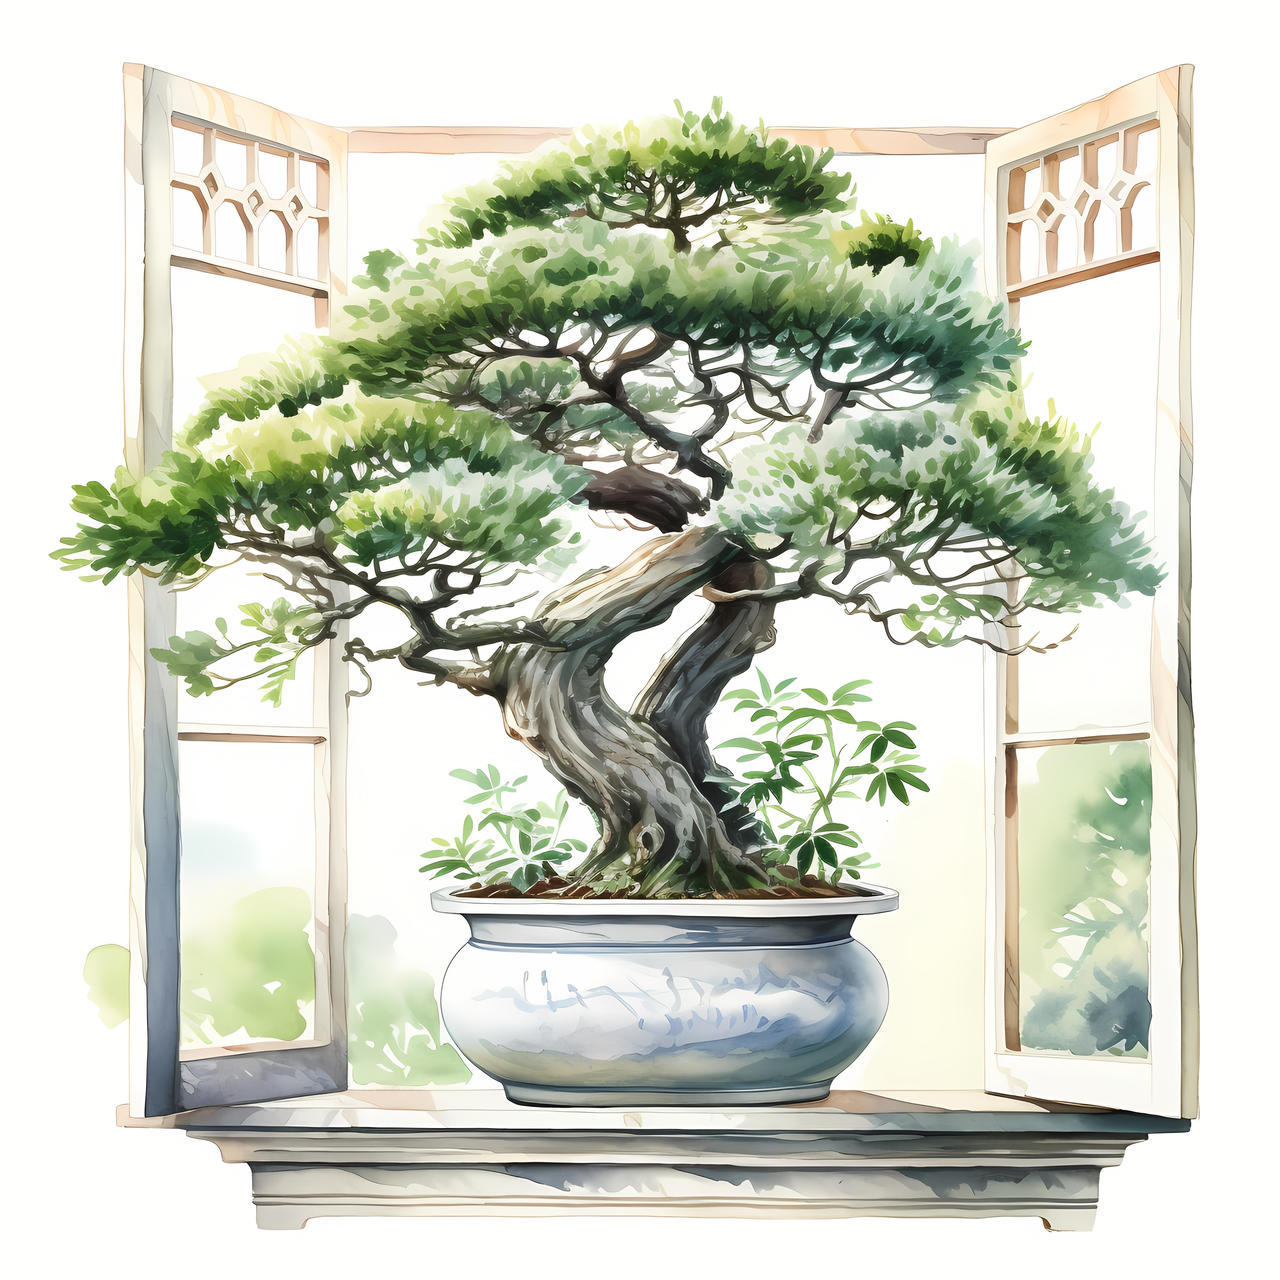 Zen Bonsai by resresres on DeviantArt